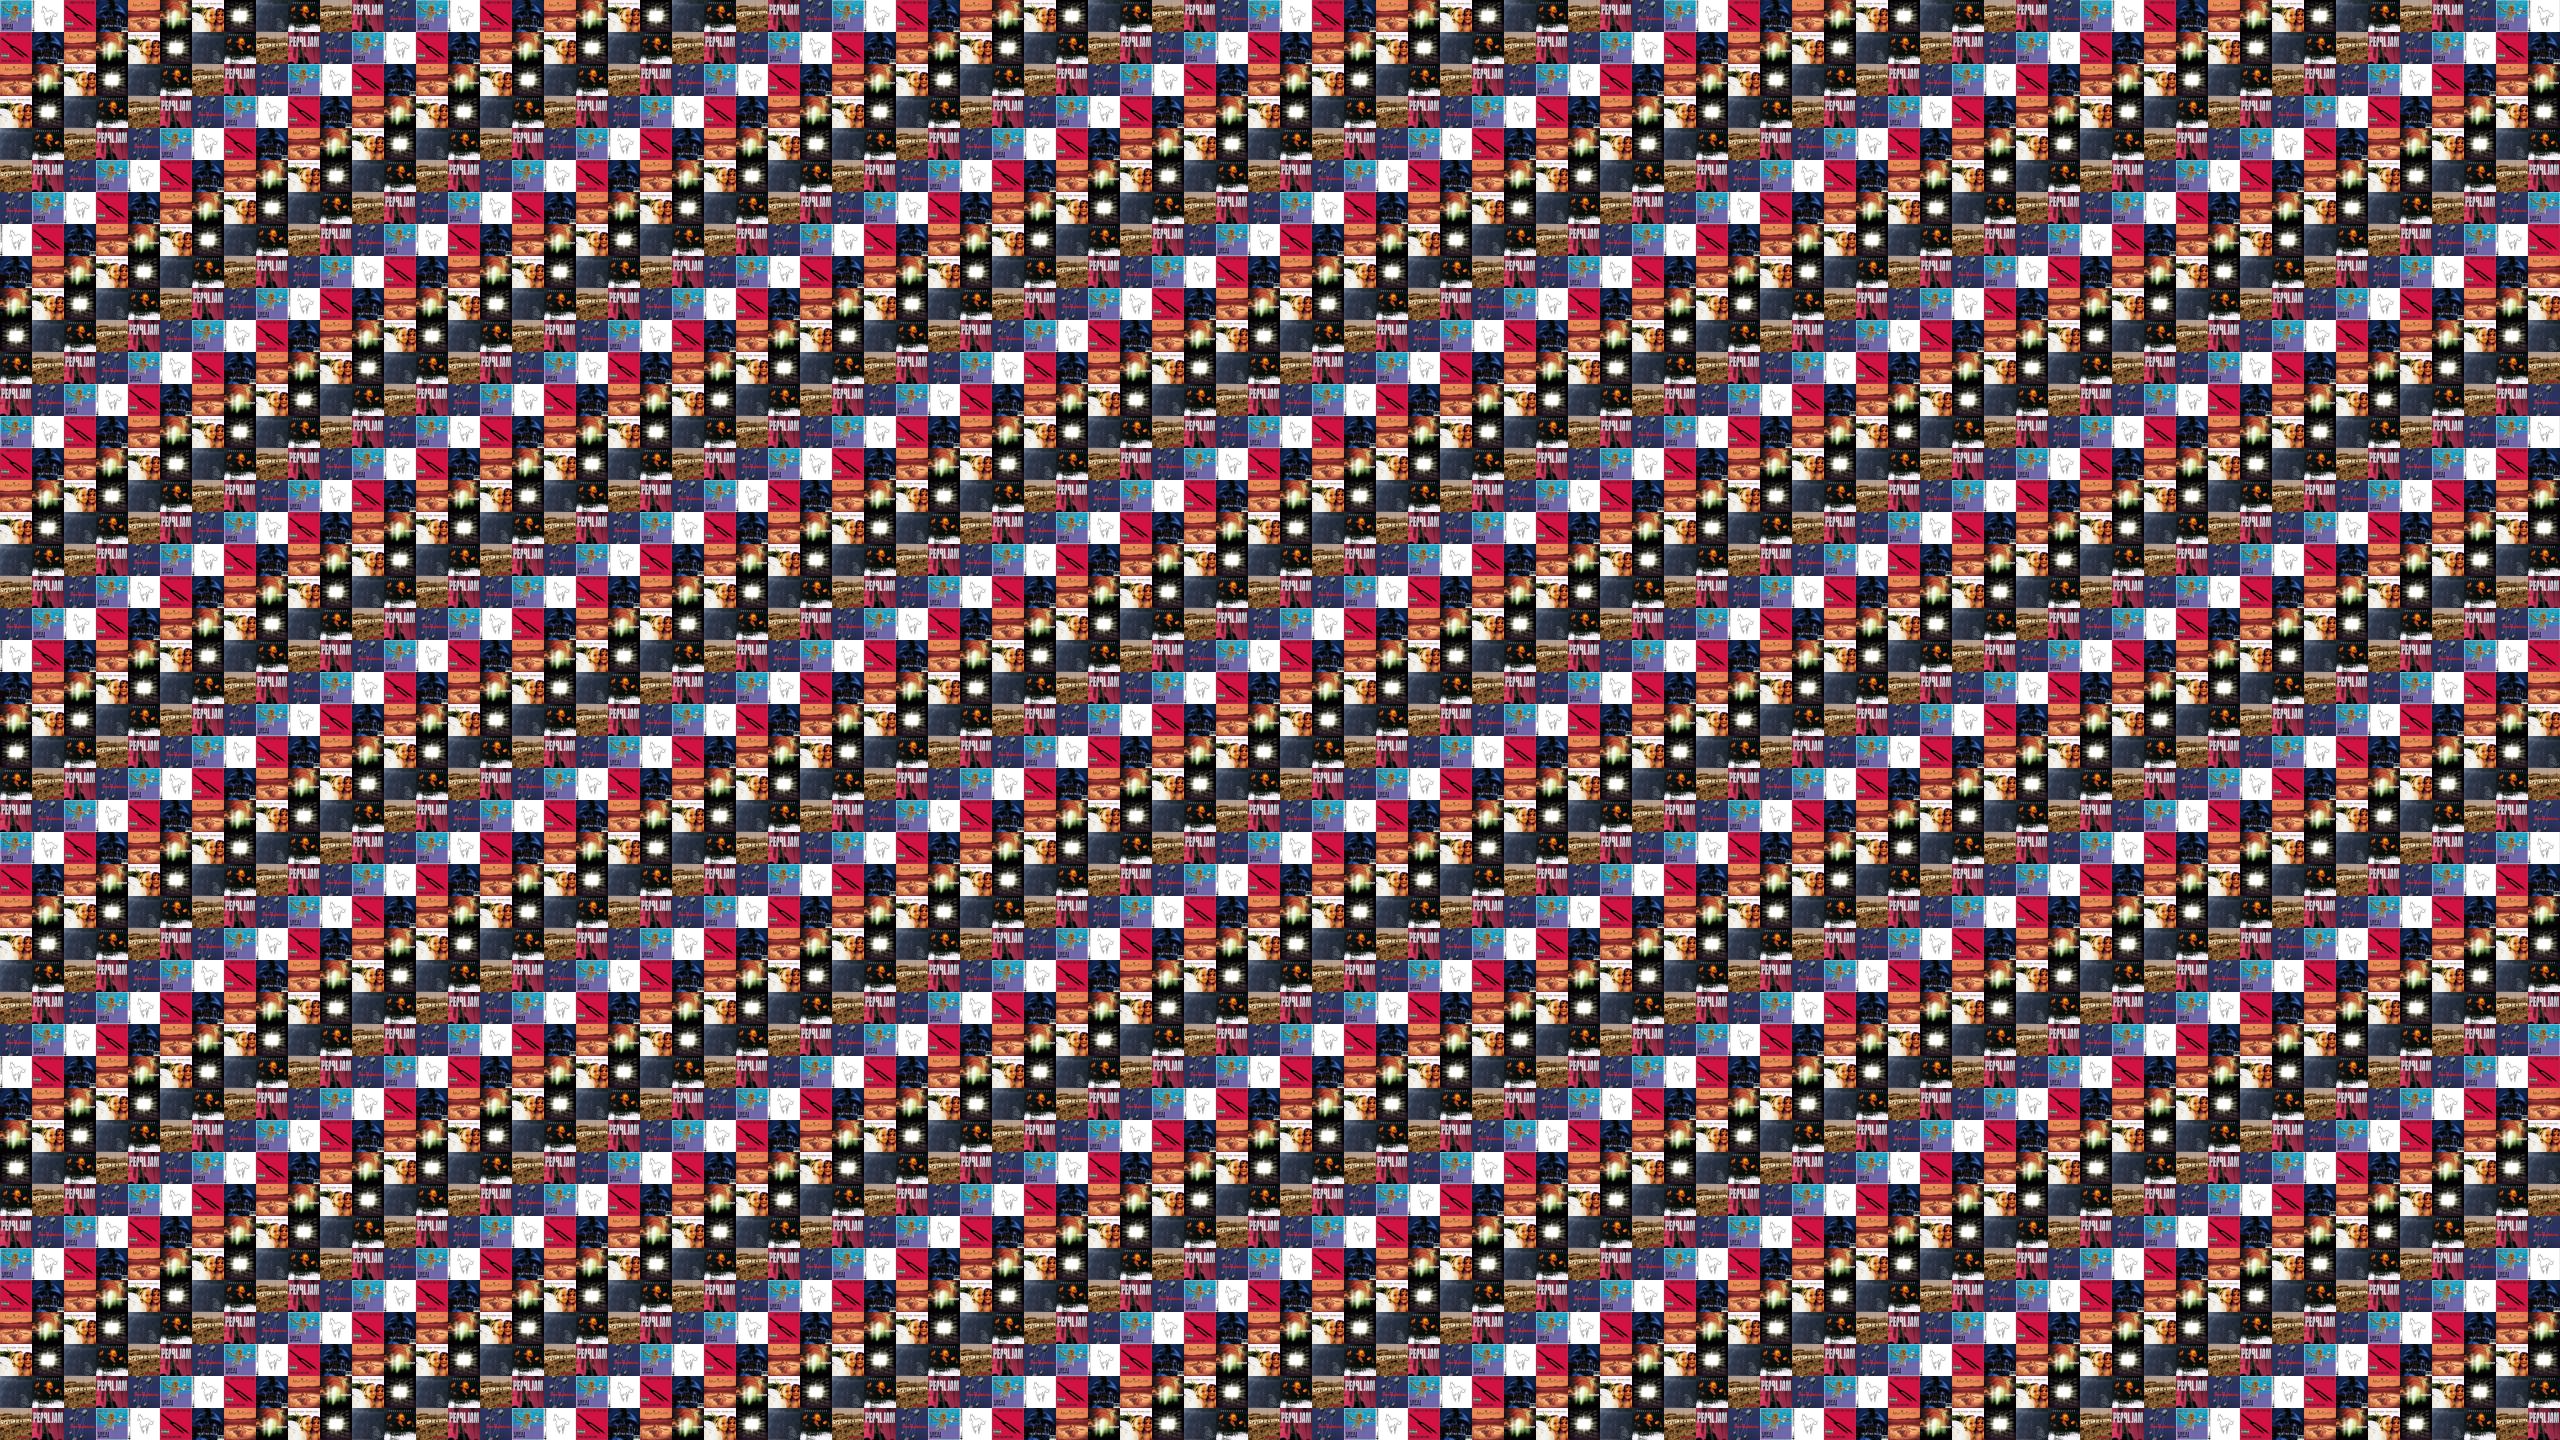 2560×1440 « Tiled Desktop Wallpaper